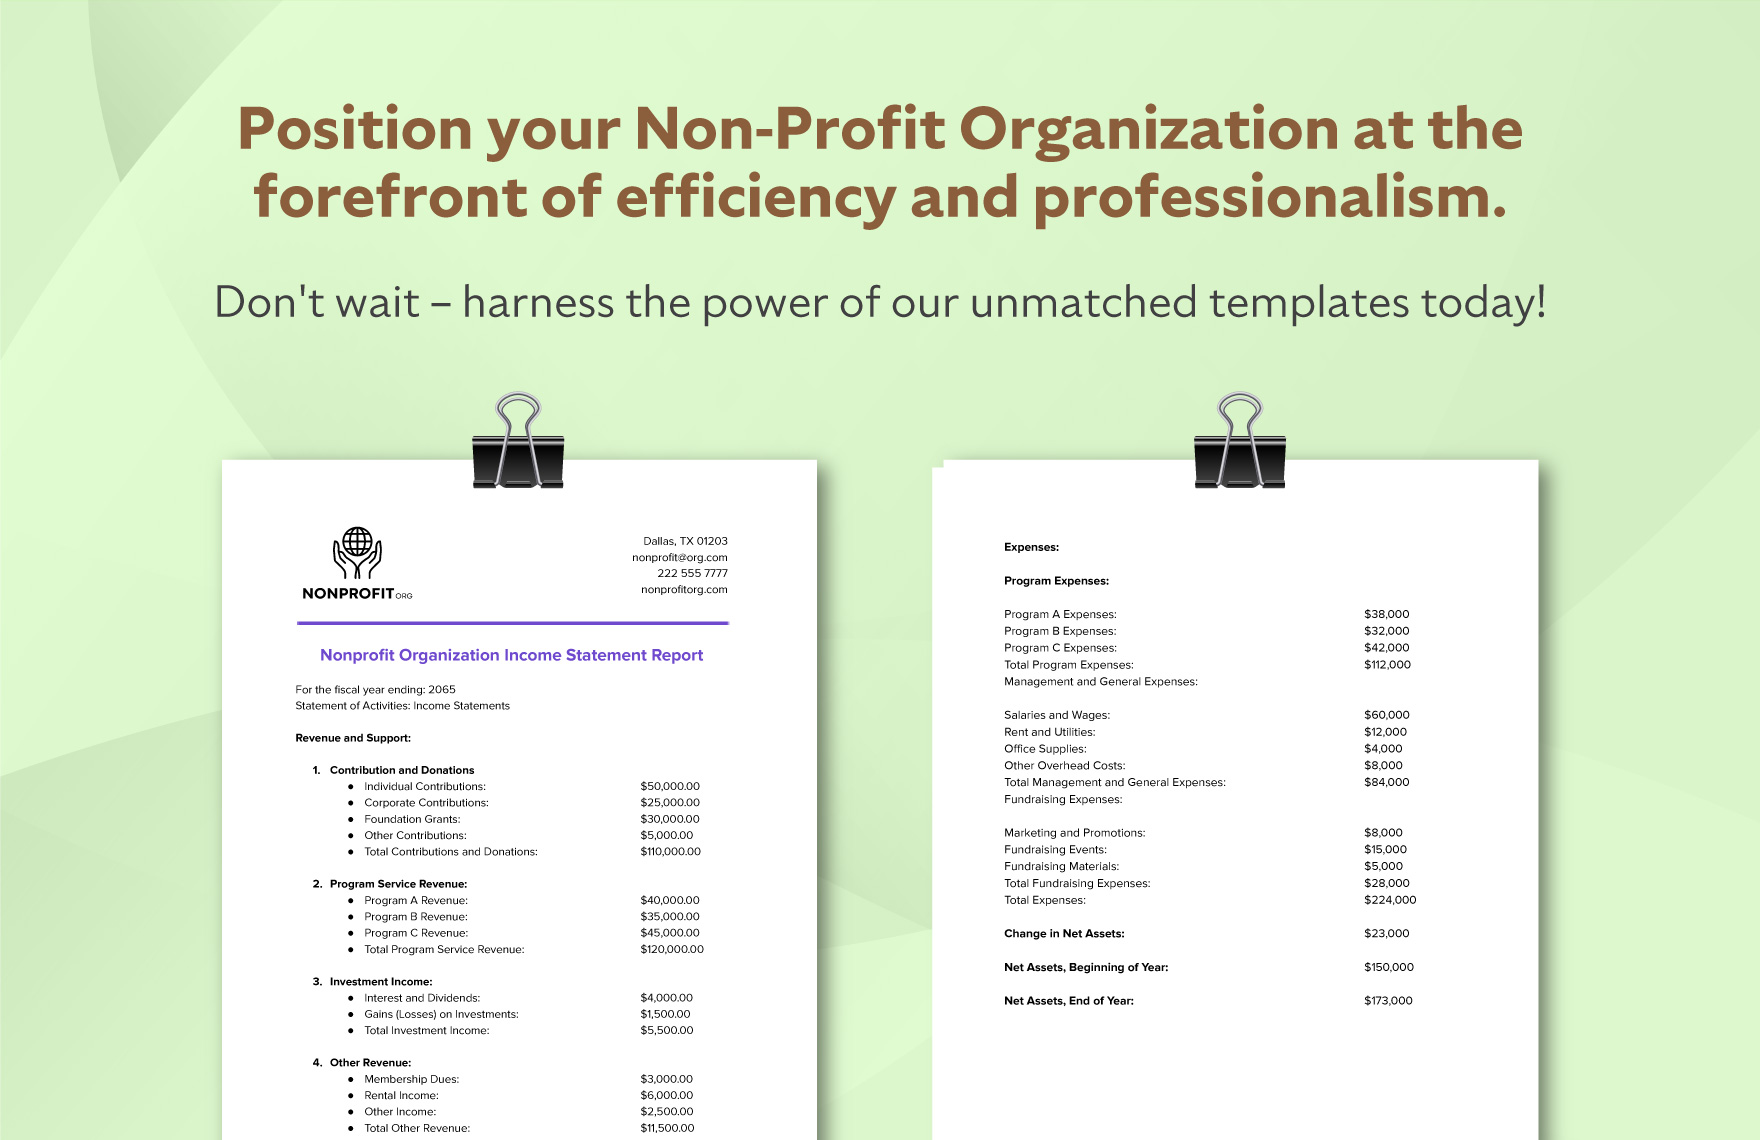 Nonprofit Organization Income Statement Report Template